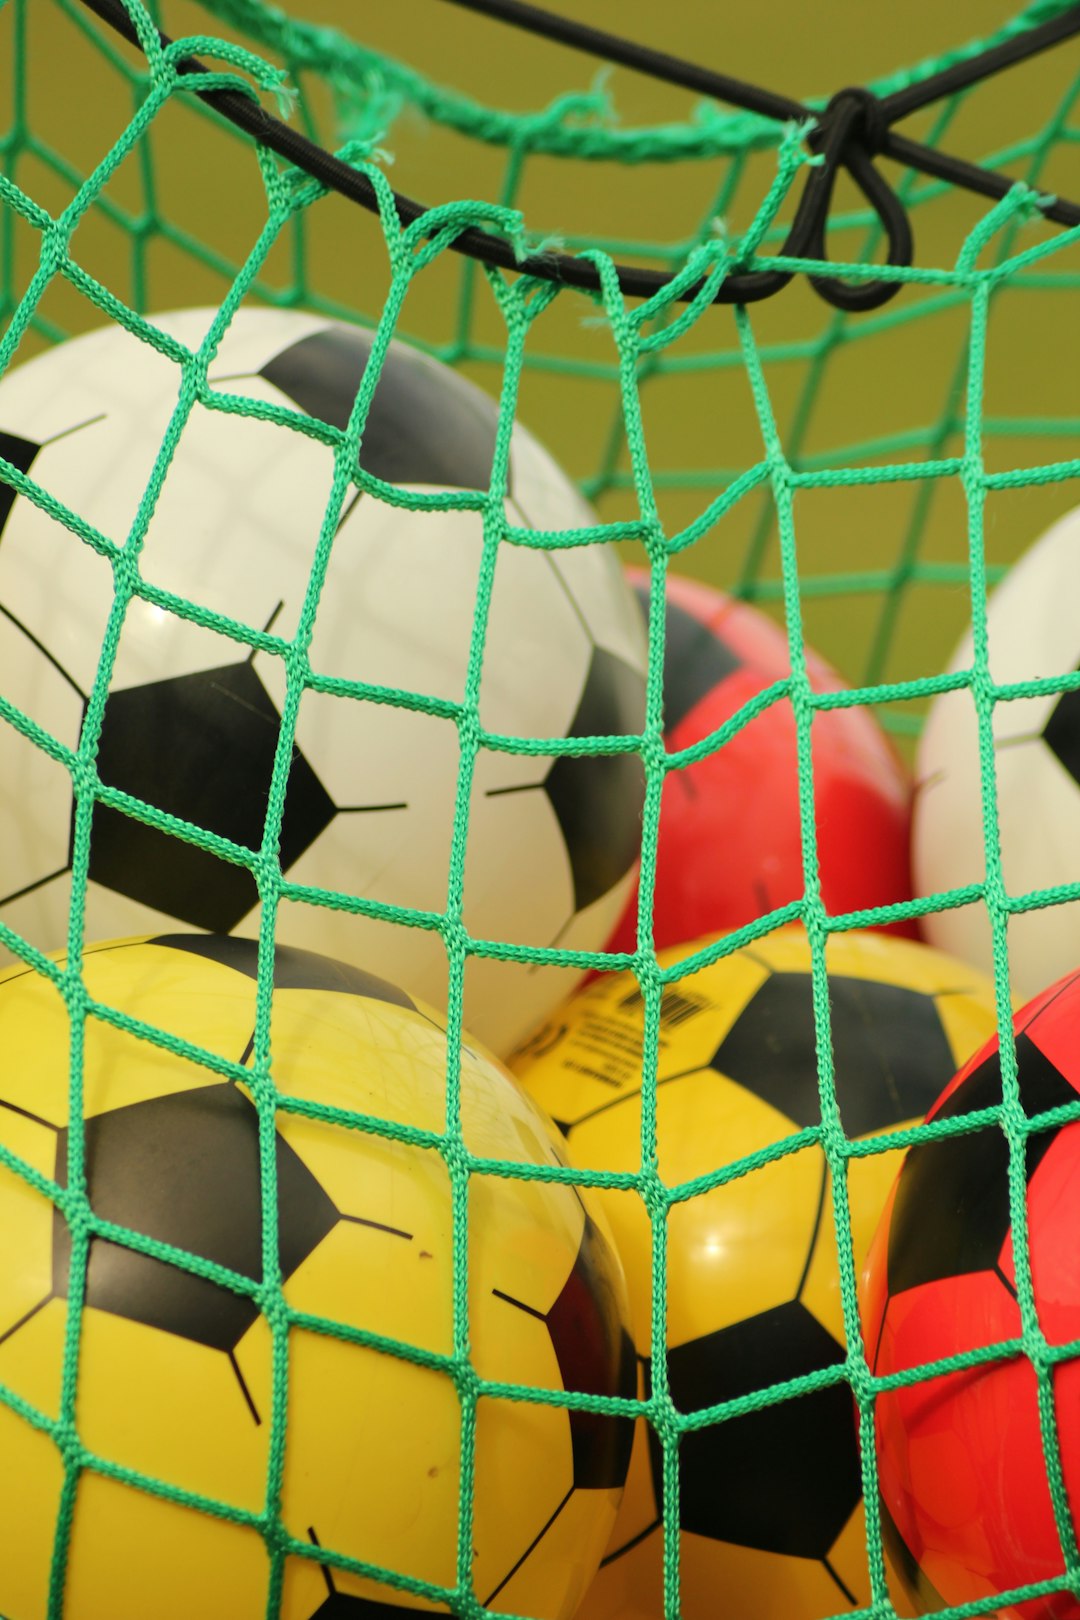 white soccer ball on green net